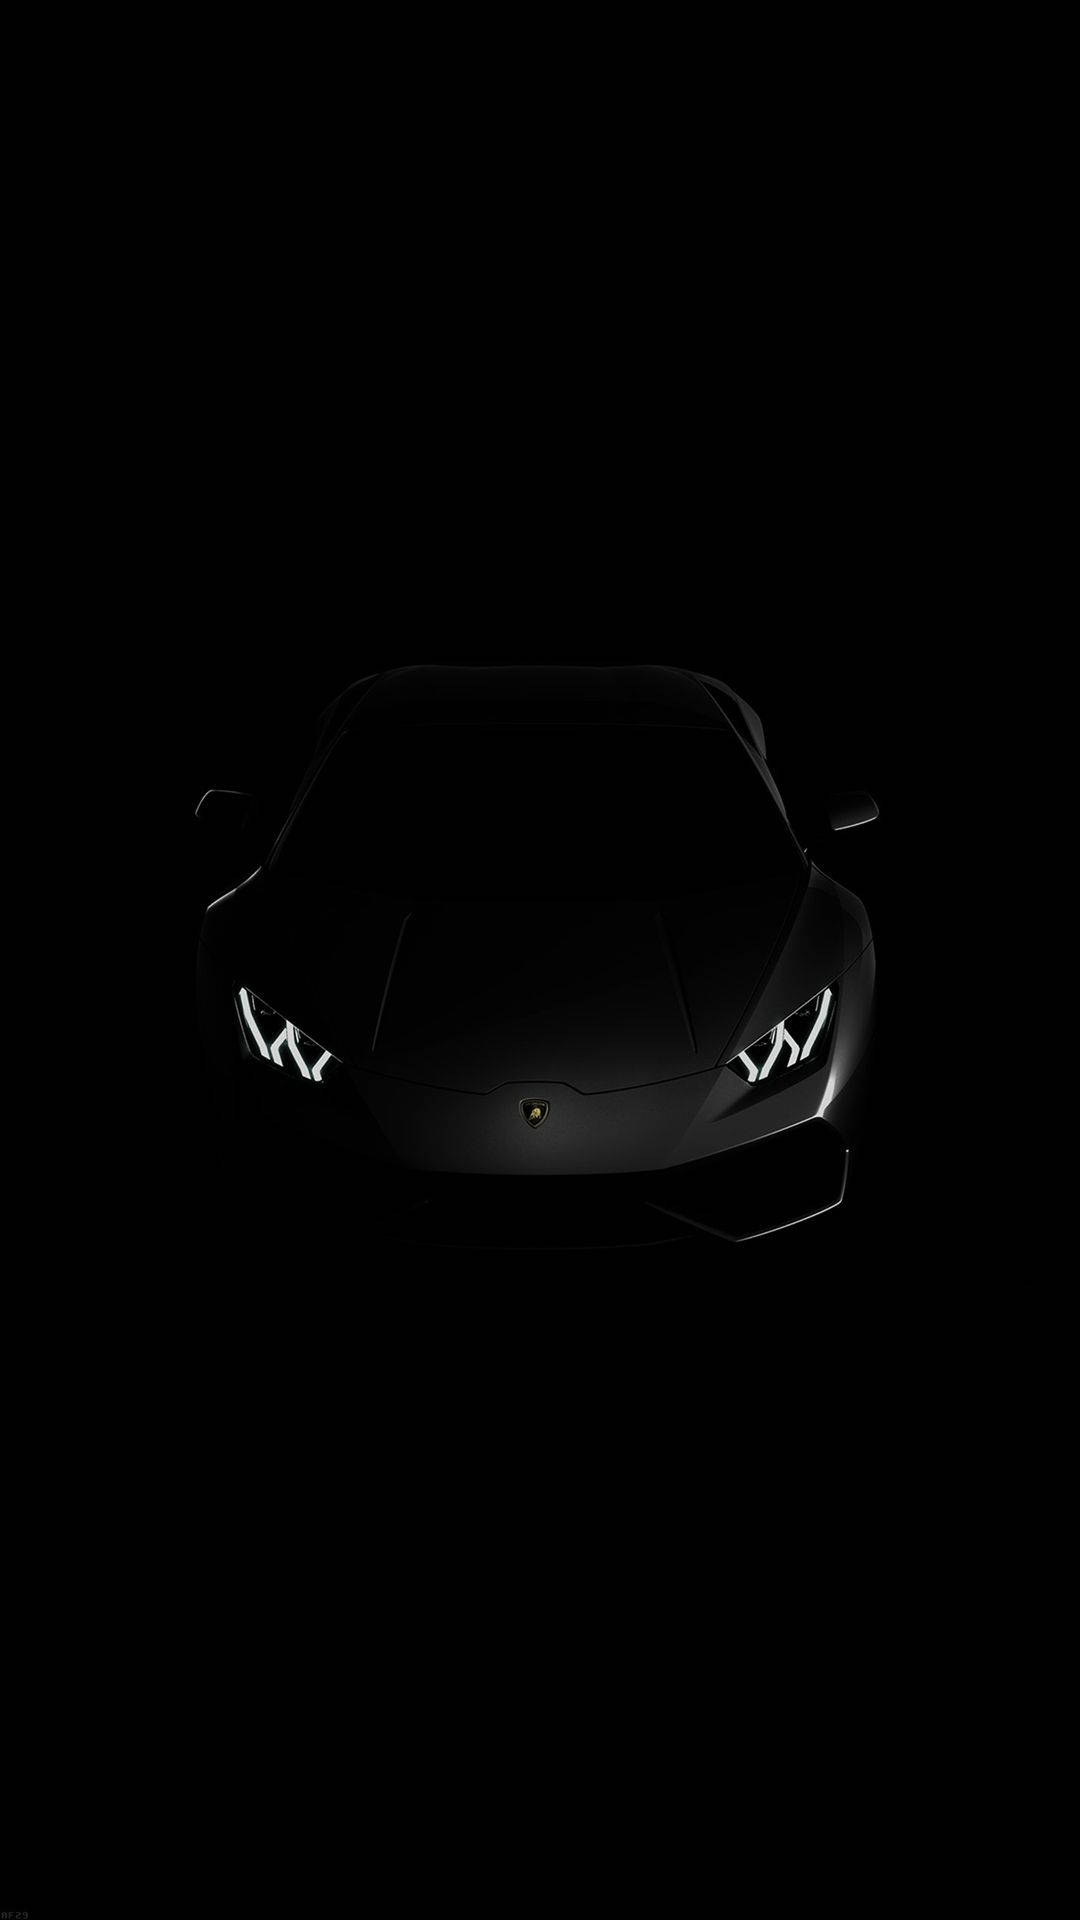 Lamborghini iPhone Sort Aesthetic Skjult i skygger Tapet Wallpaper